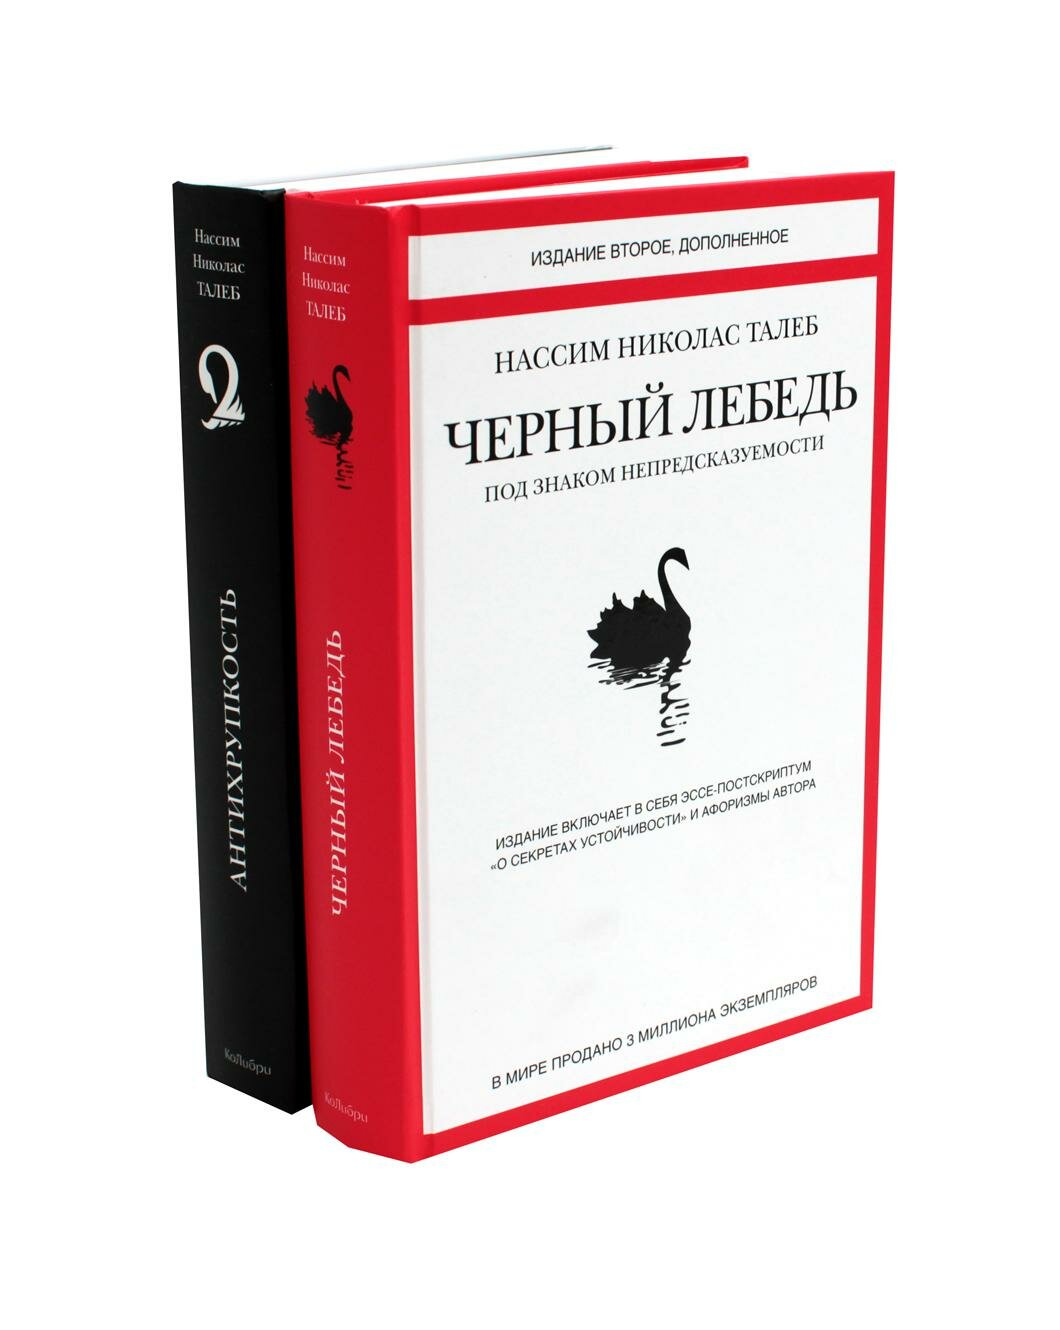 Черный лебедь; Антихрупкость: комплект в 2 кн. Талеб Н. Н. КоЛибри